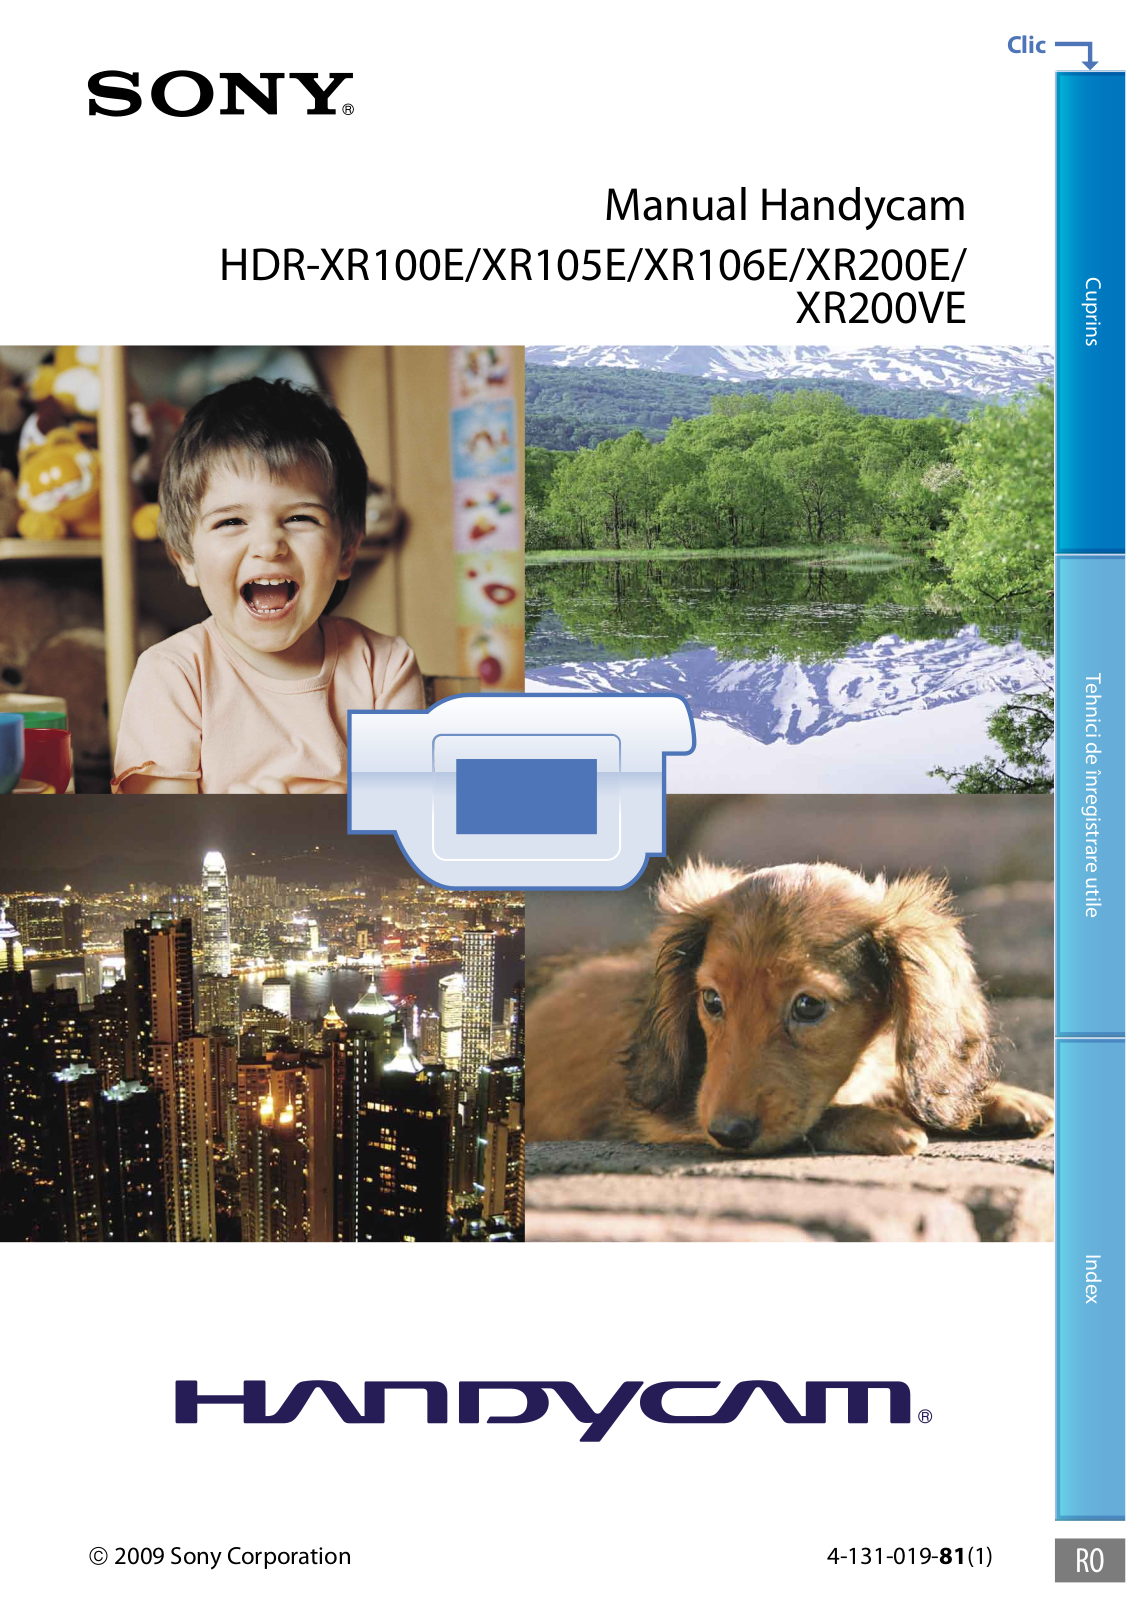 Sony HDR-XR100E, XR105E, XR200E, XR200VE, XR106E User Manual